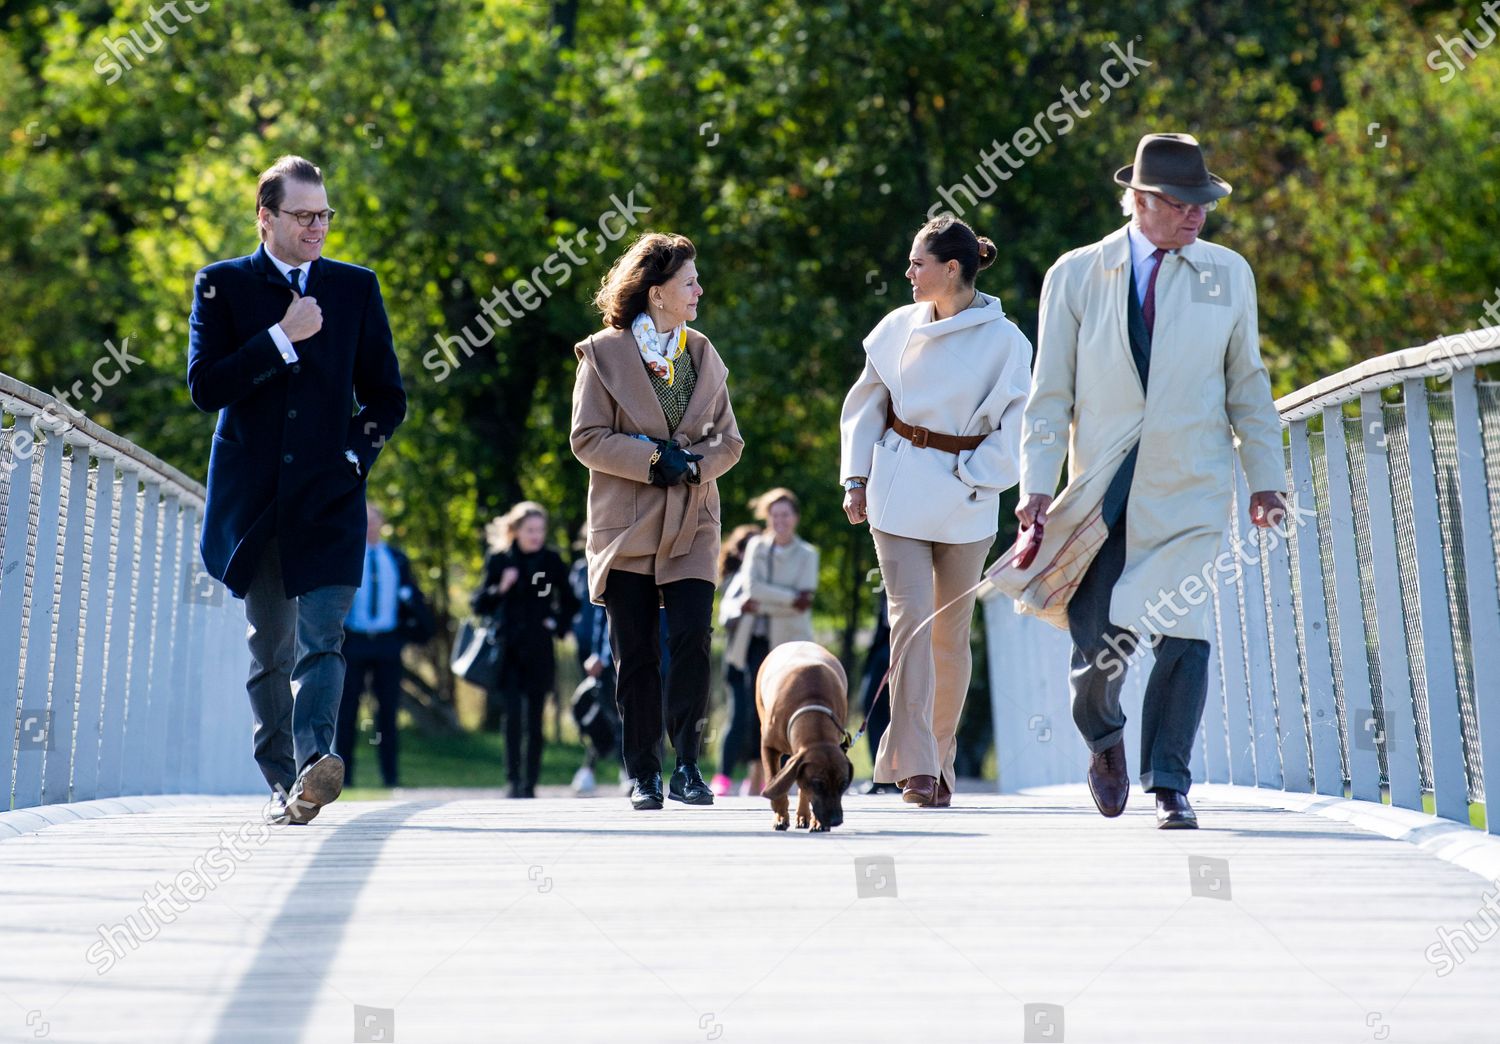 swedish-royals-visit-to-djurgarden-royal-park-stockholm-sweden-shutterstock-editorial-10779905au.jpg